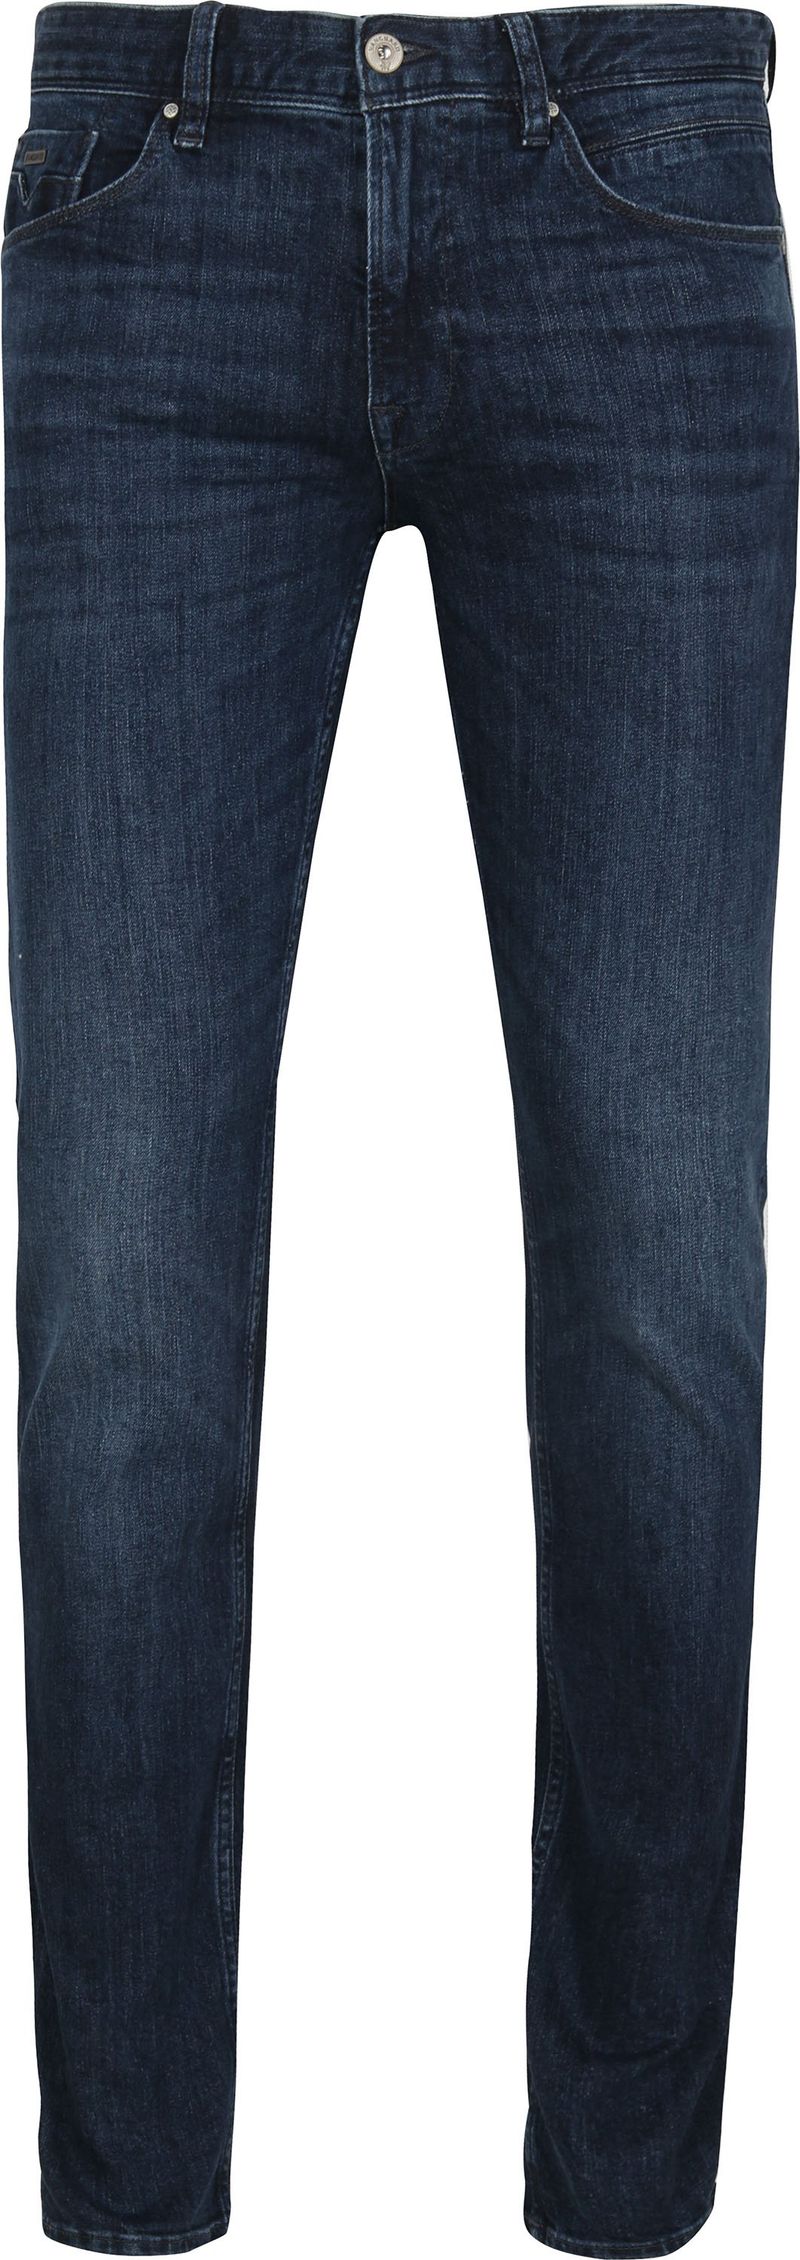 Vanguard Jeans V7 Rider Steel Washed Blau - Größe W 36 - L 34 günstig online kaufen